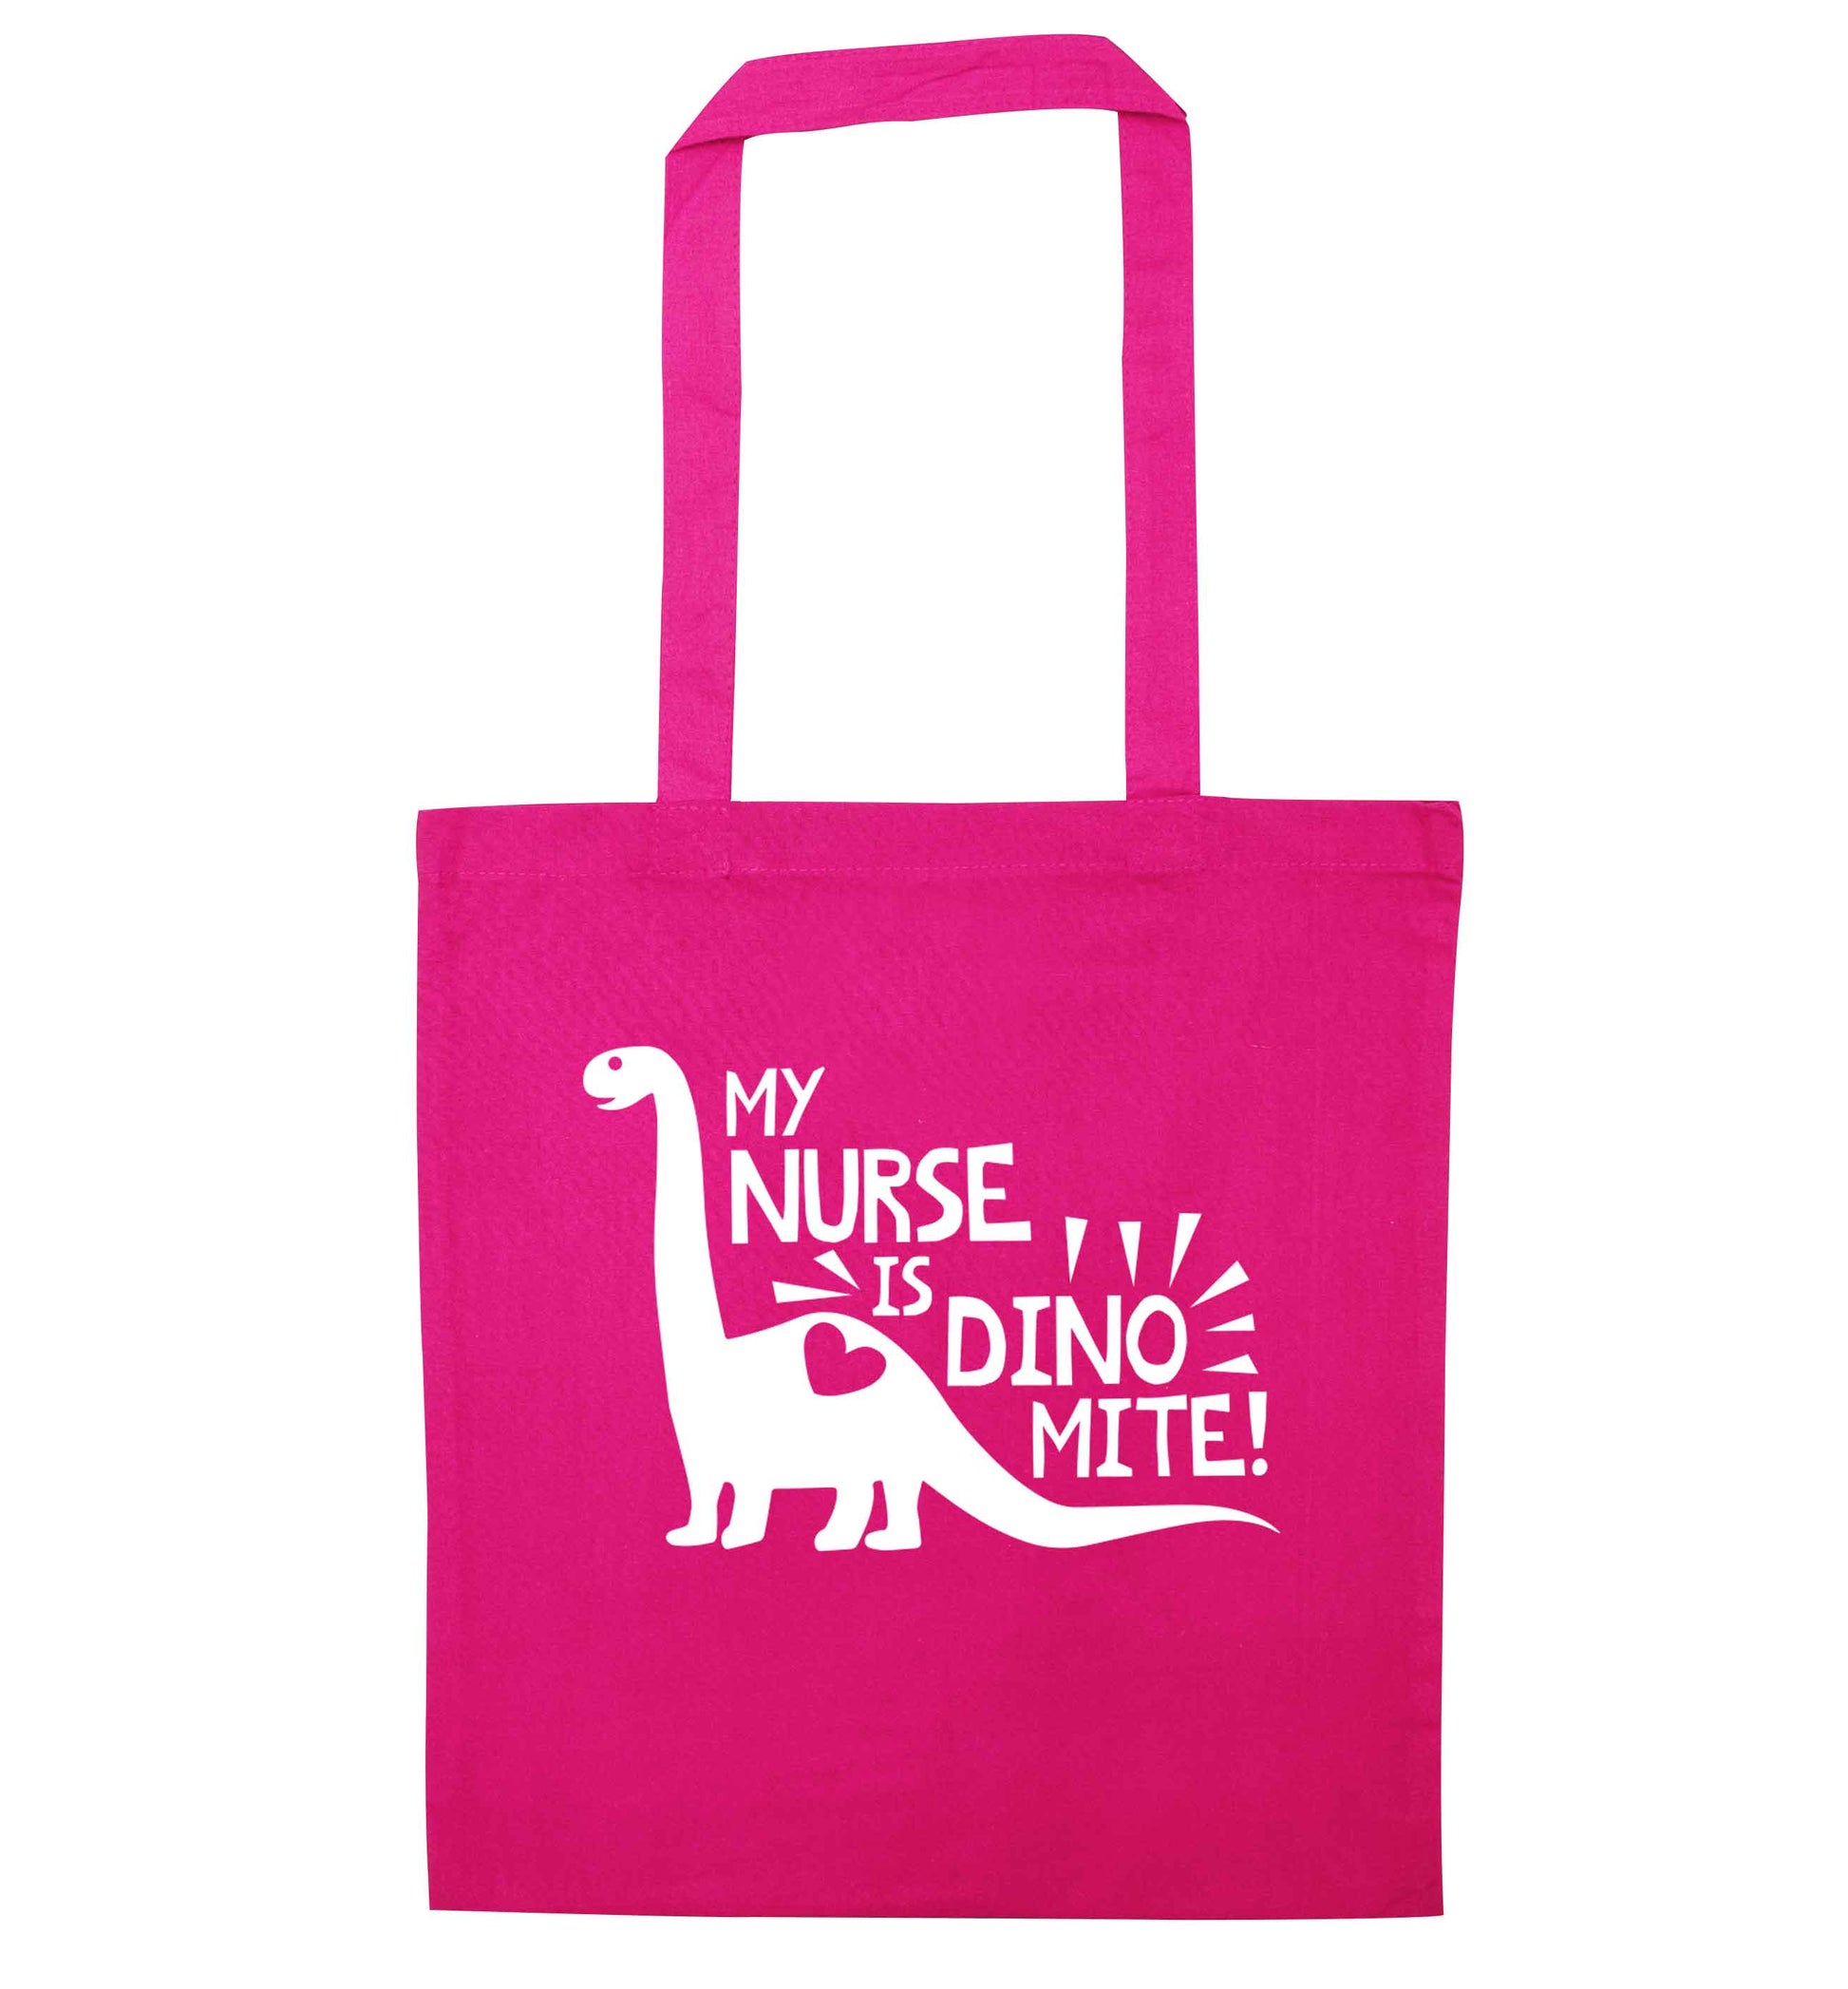 My nurse is dinomite! pink tote bag